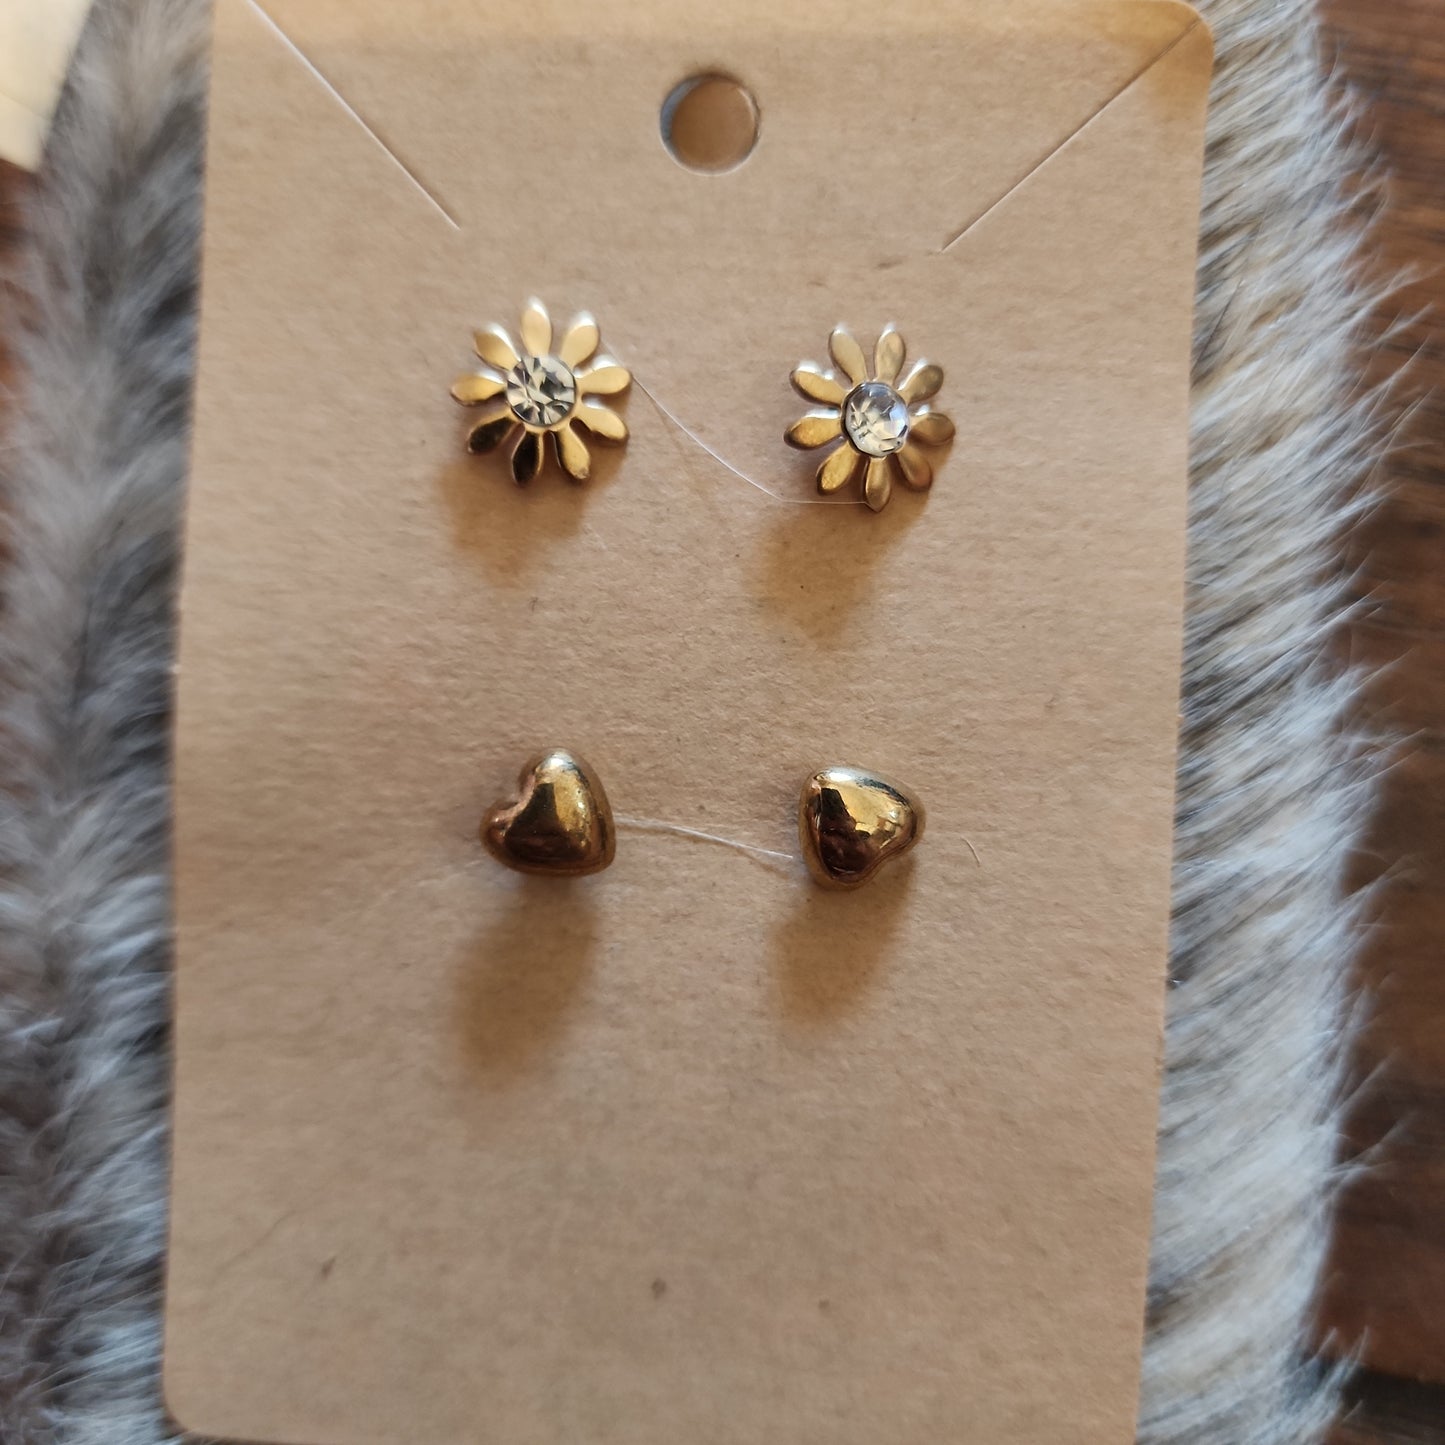 The Golden Girls Earring Sets